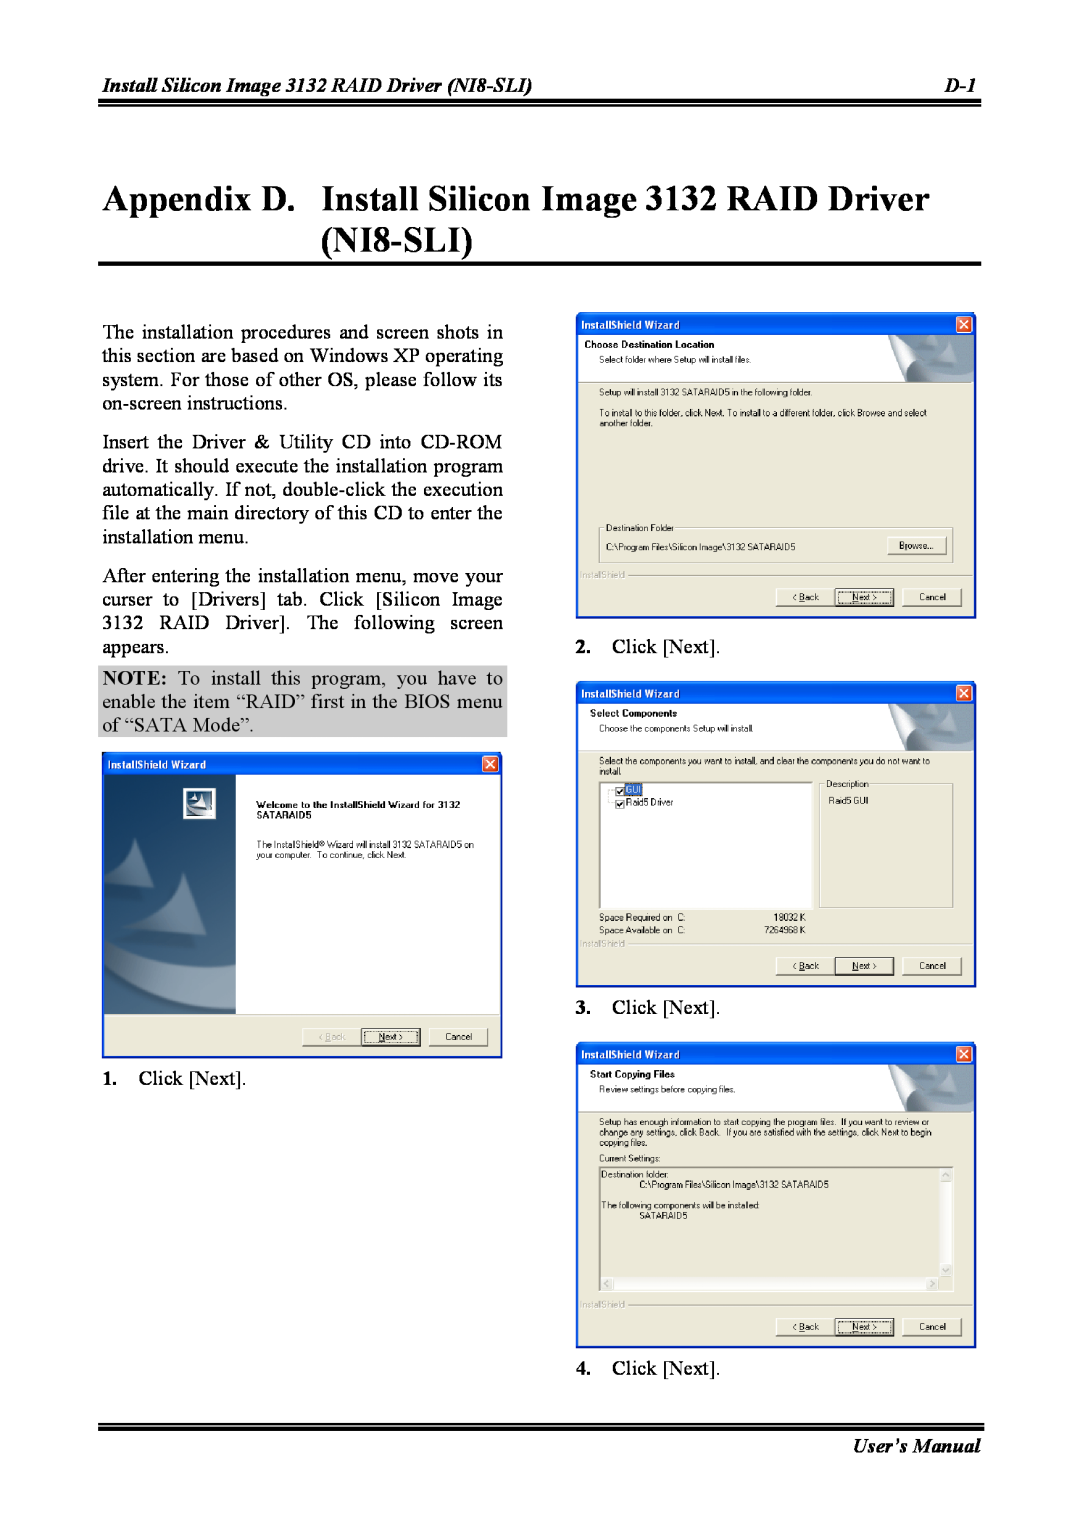 Abit NI8 SLI Appendix D. Install Silicon Image 3132 RAID Driver NI8-SLI, After entering the installation menu, move your 